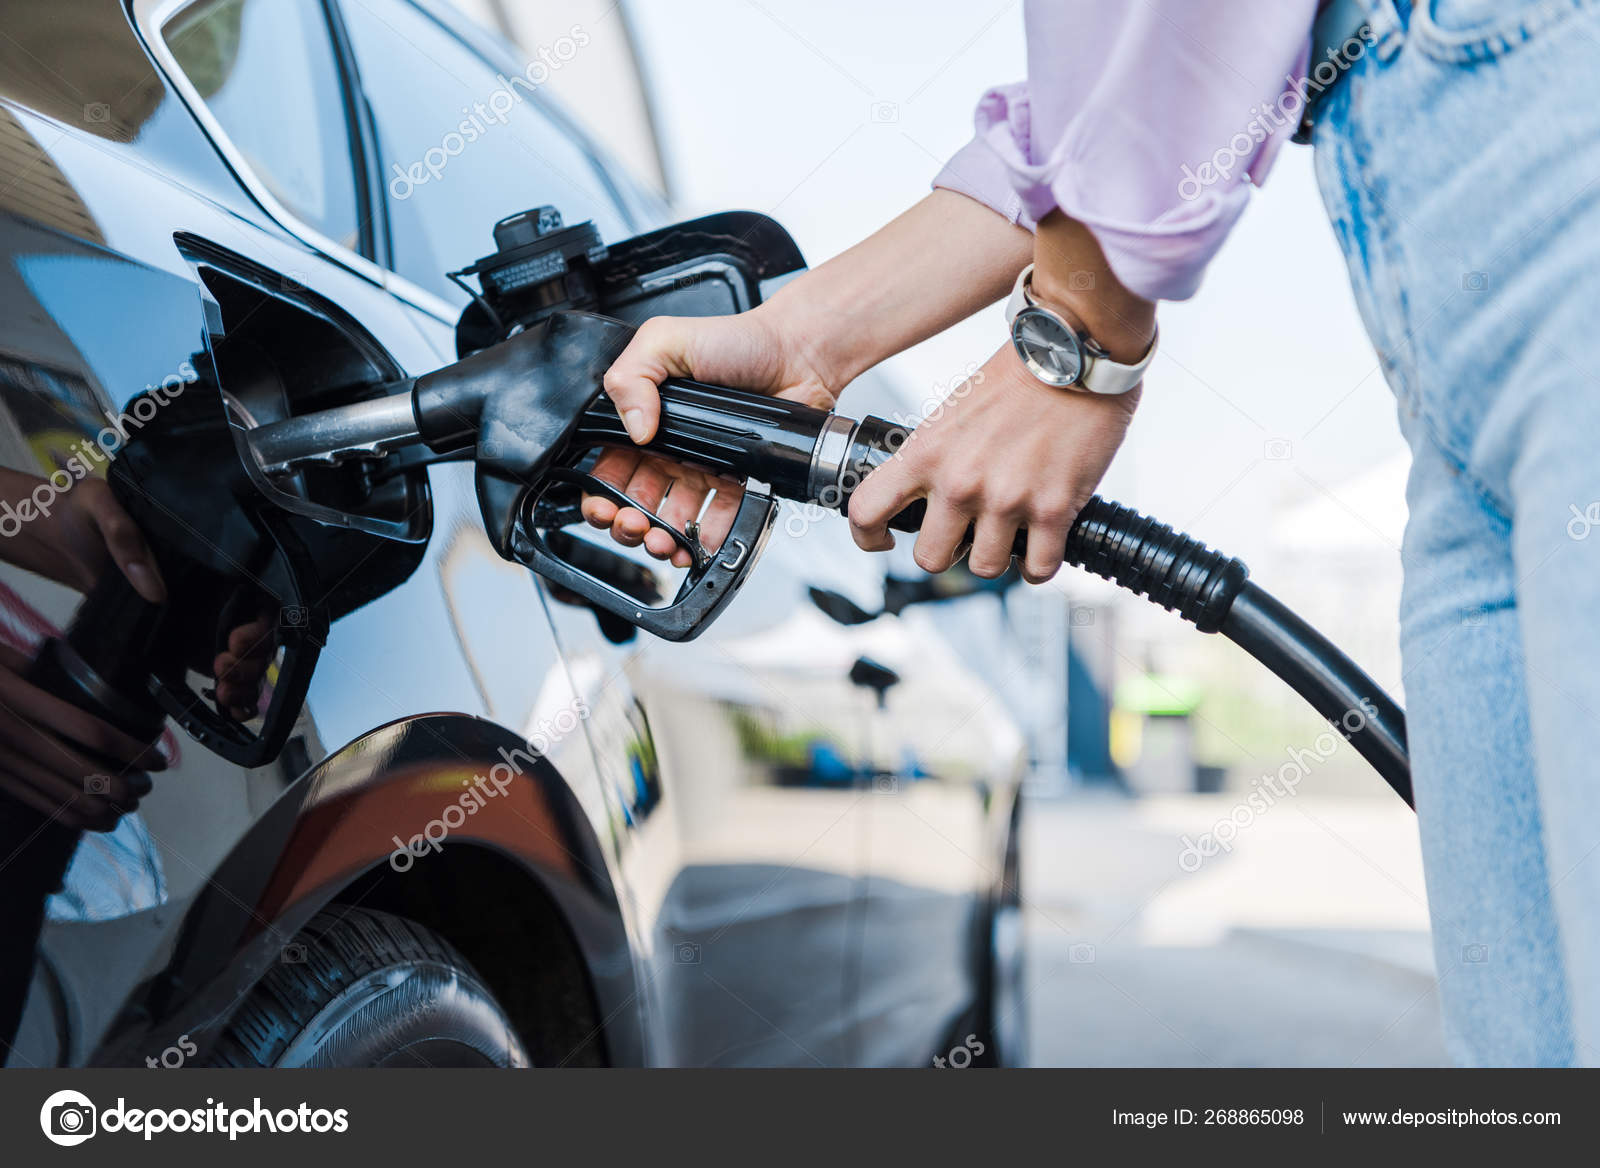 Surtidor de gasolina Stockfotos, lizenzfreie Surtidor de gasolina